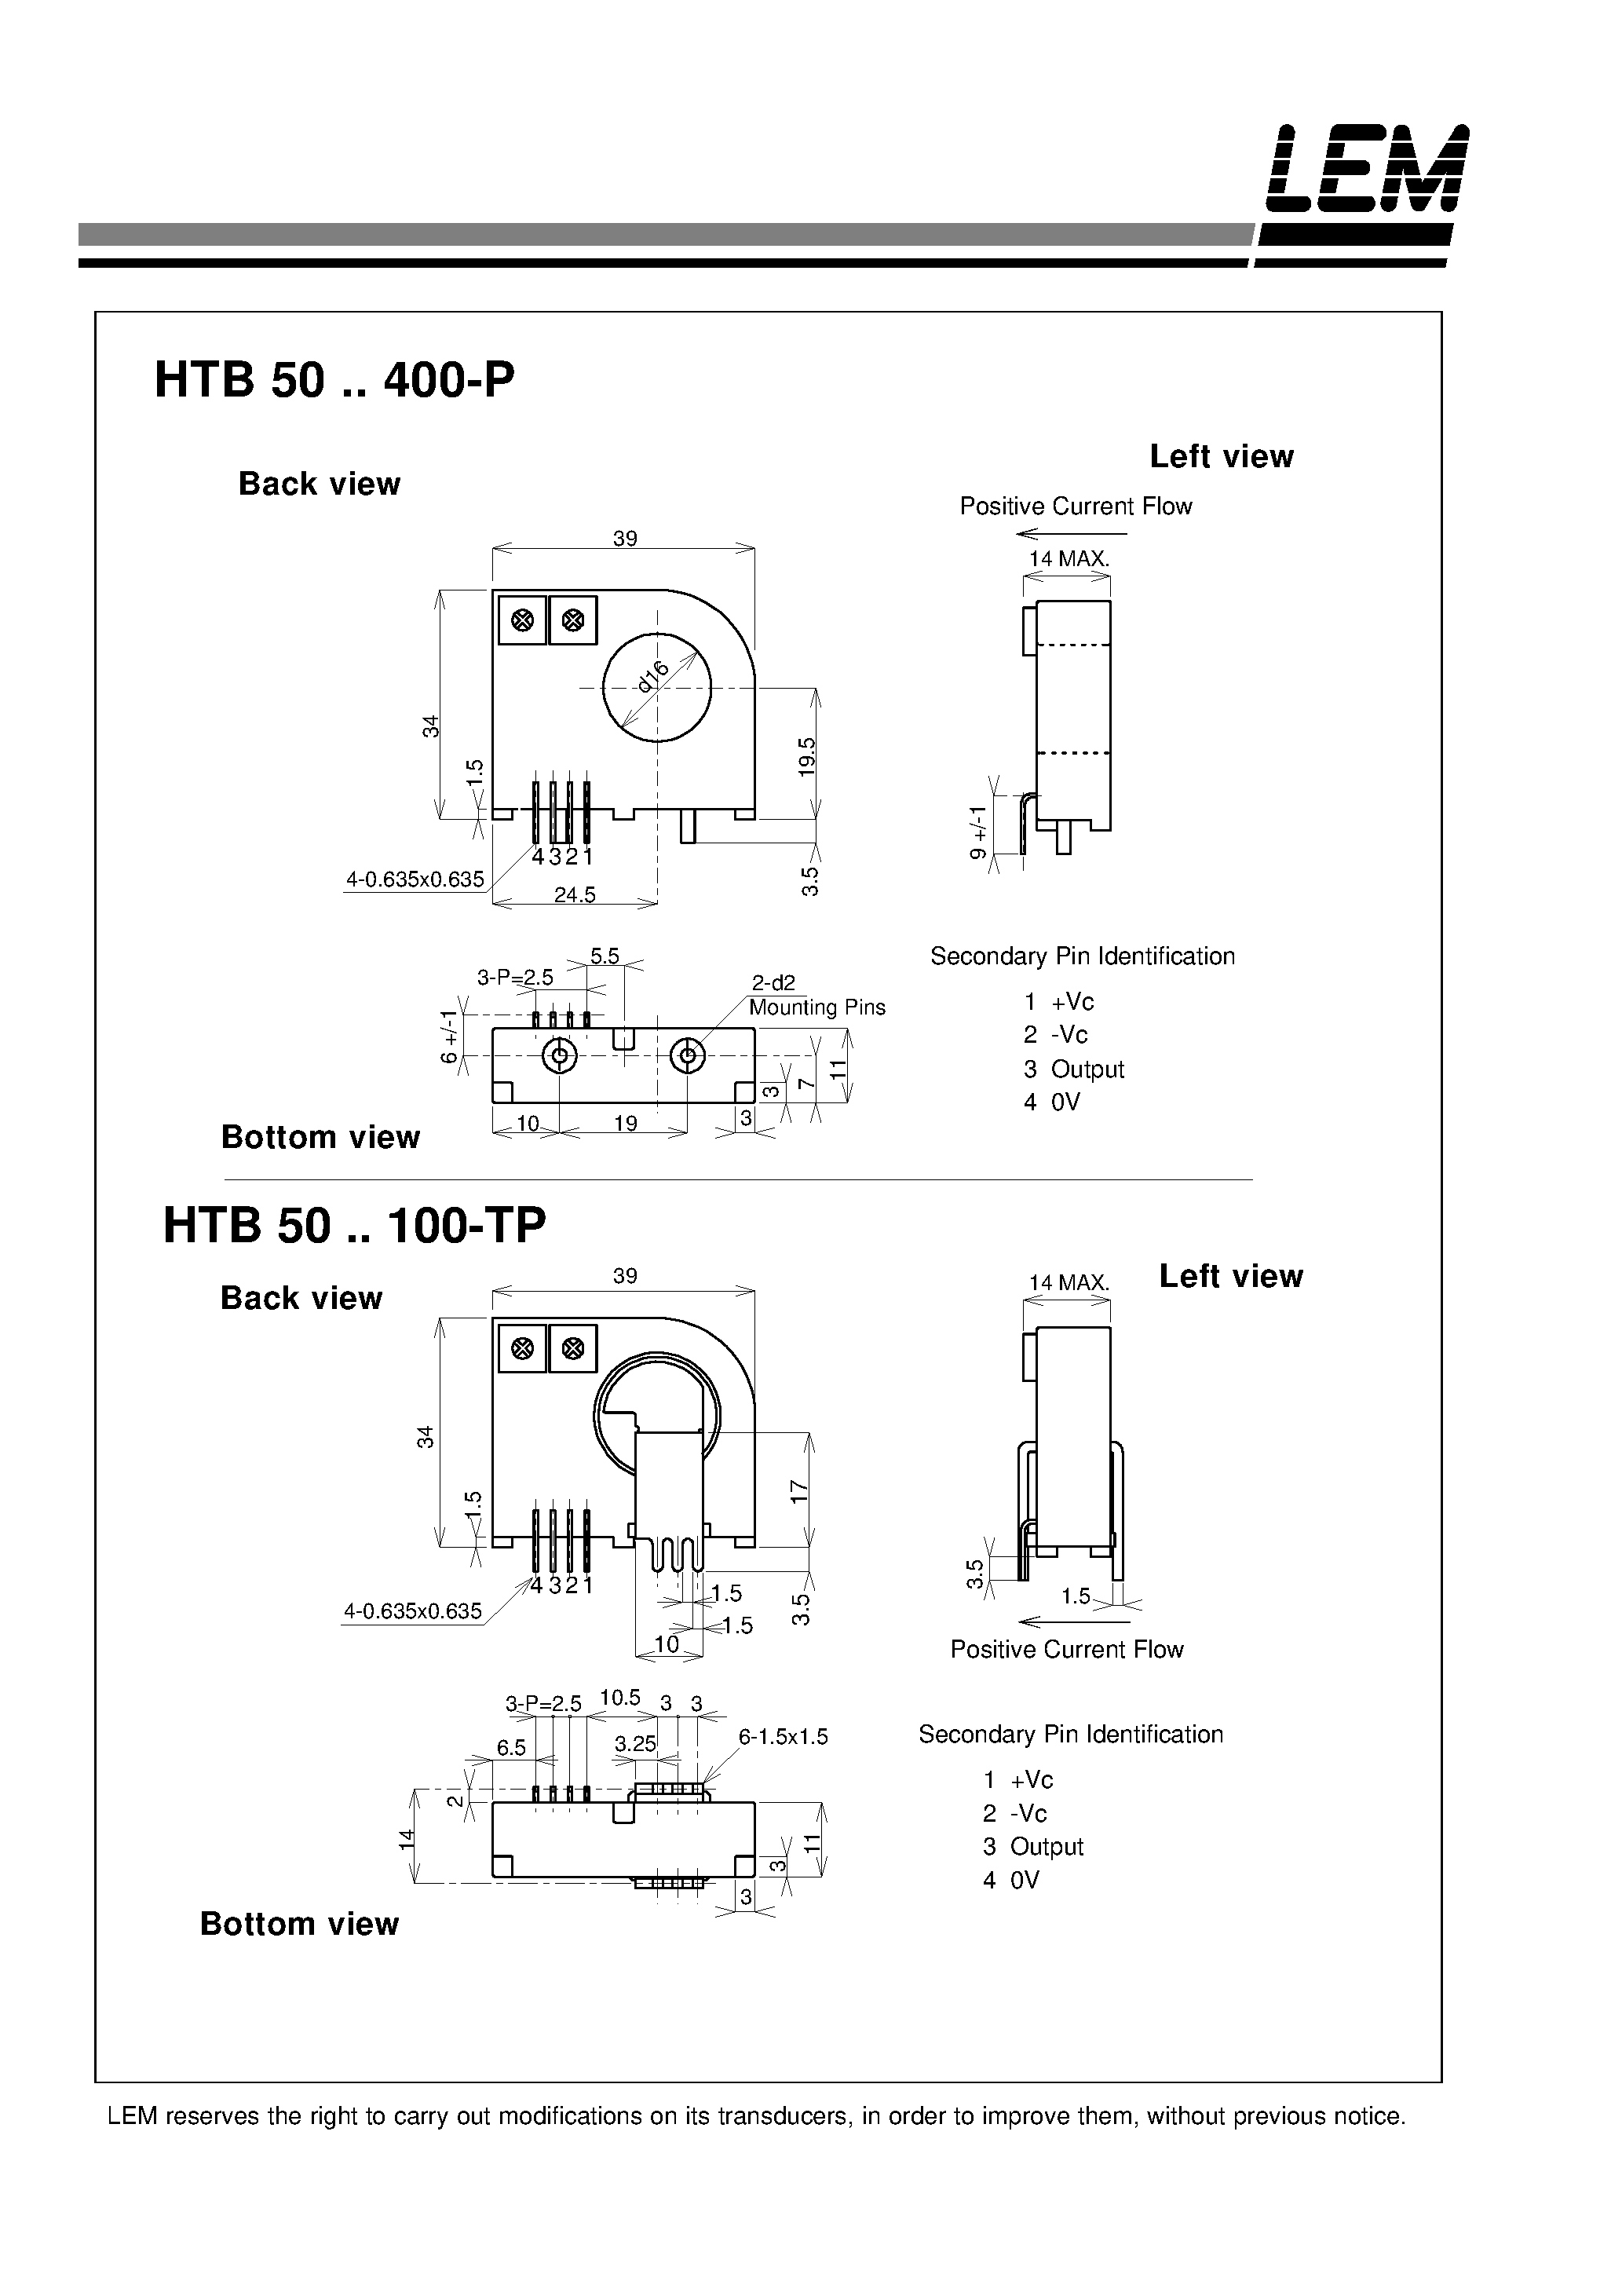 Даташит HTB300-P - Current Transducers HTB 50~400-P and HTB 50~100-TP страница 2